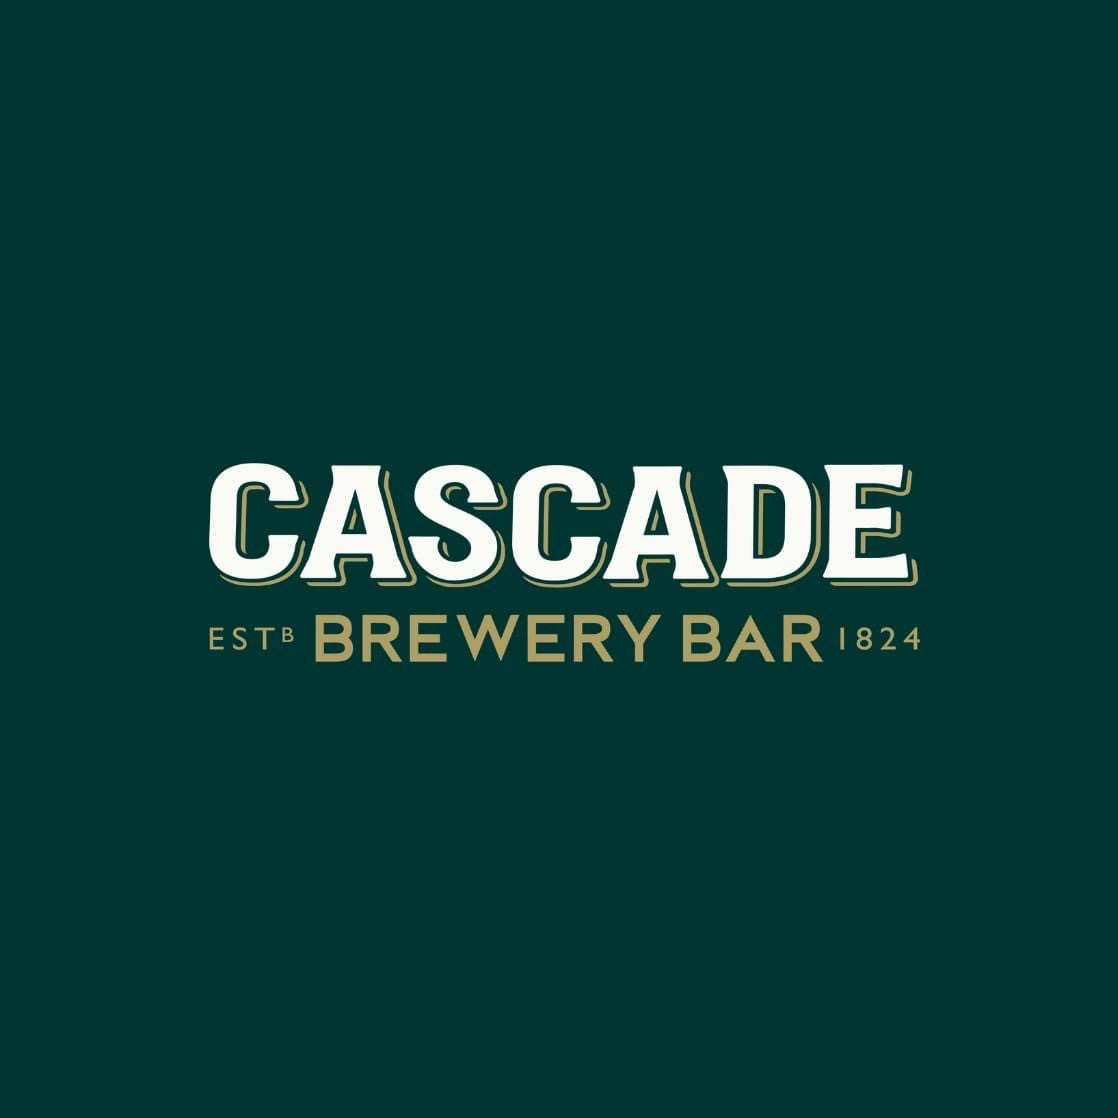 www.cascadebrewerybar.com.au